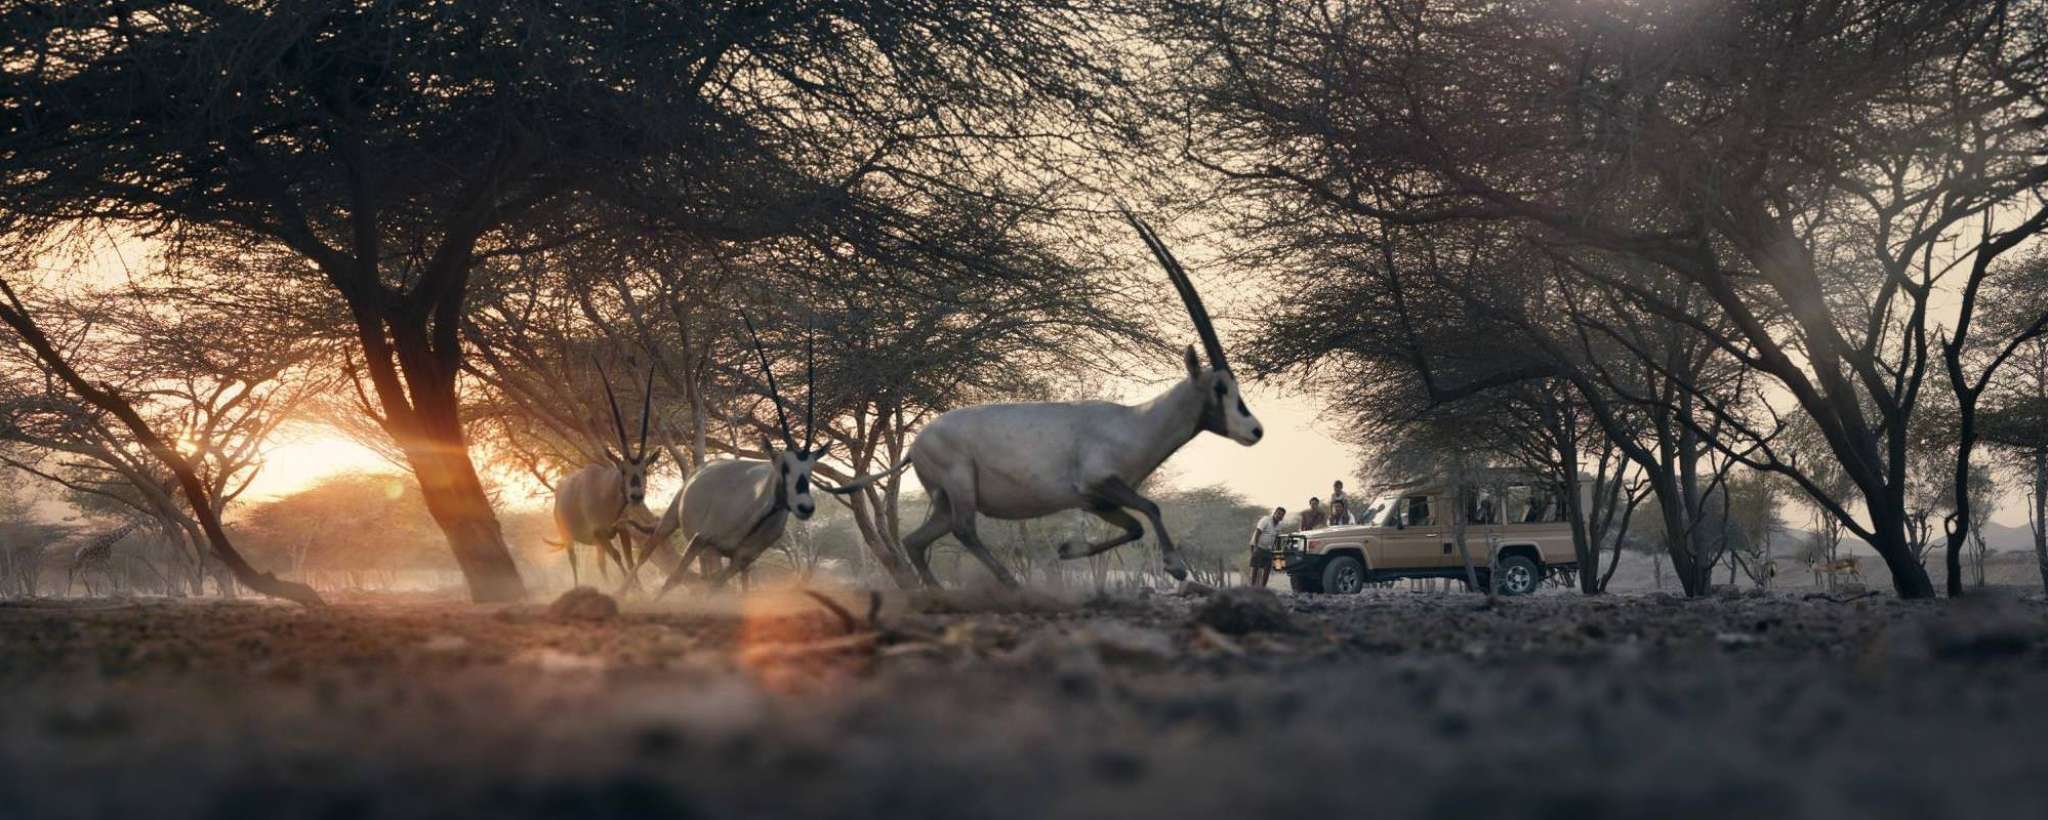 Sir Bani Yas Island: an eco-Wildlife Safari on the Persian Gulf  antelope running safari.